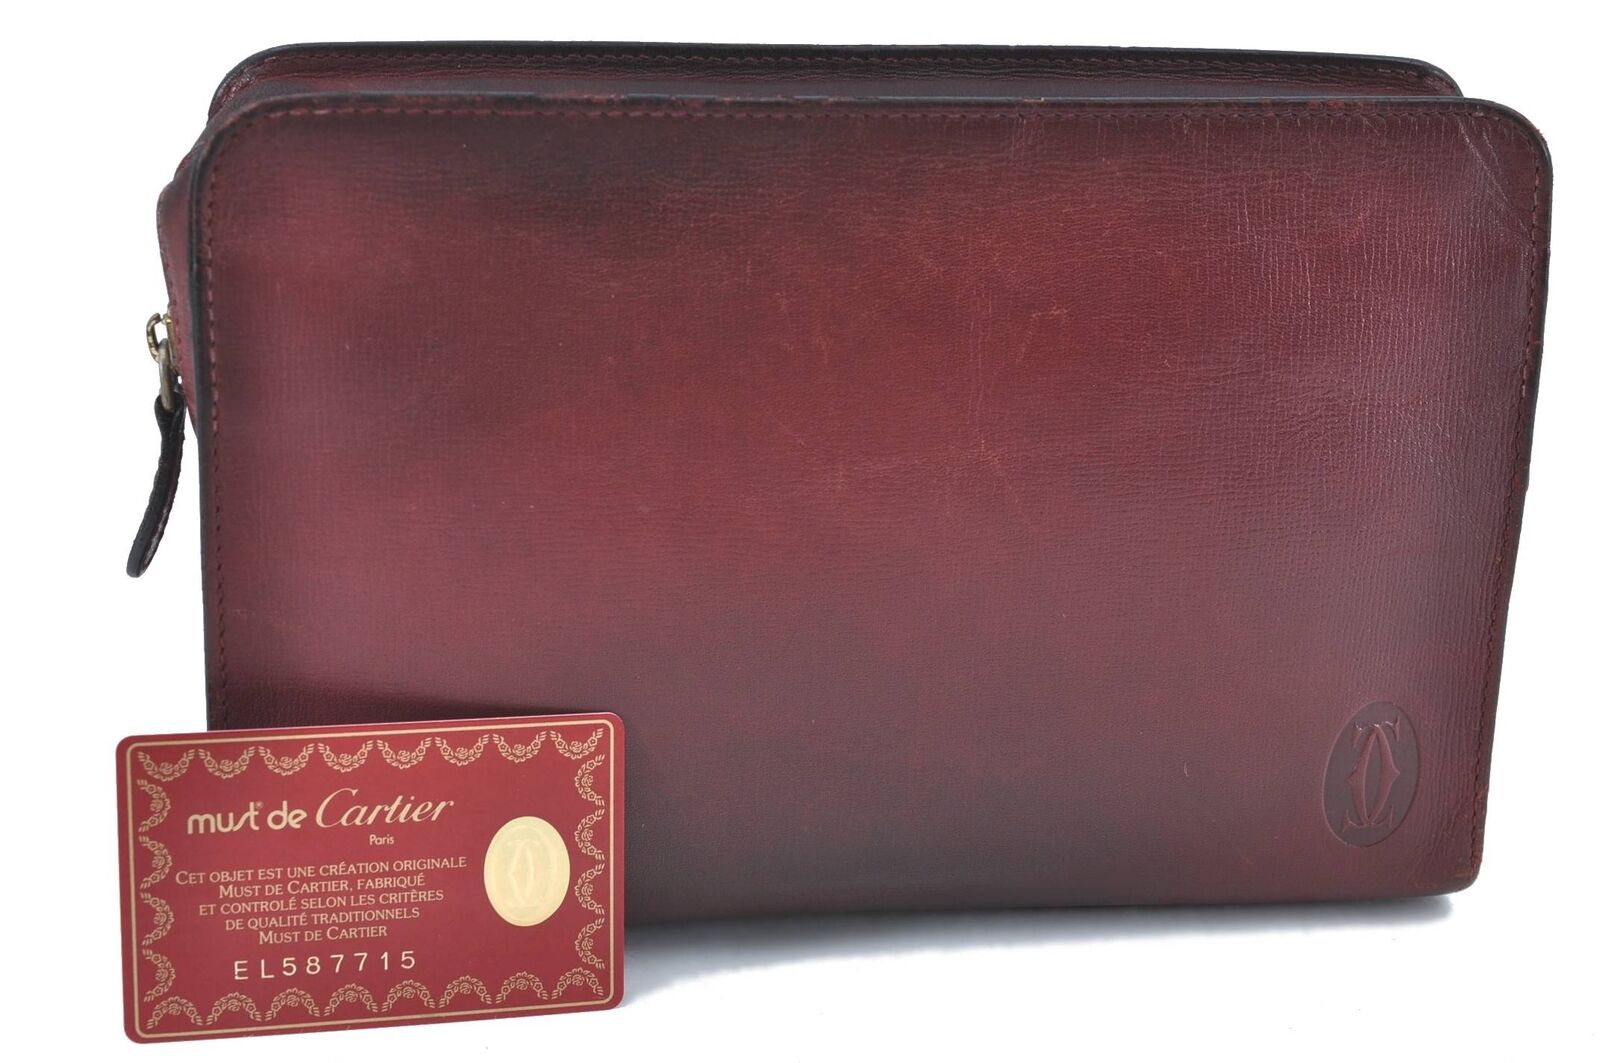 Authentic CARTIER Must de Cartier Clutch Bag Leather Bordeaux Red H5475